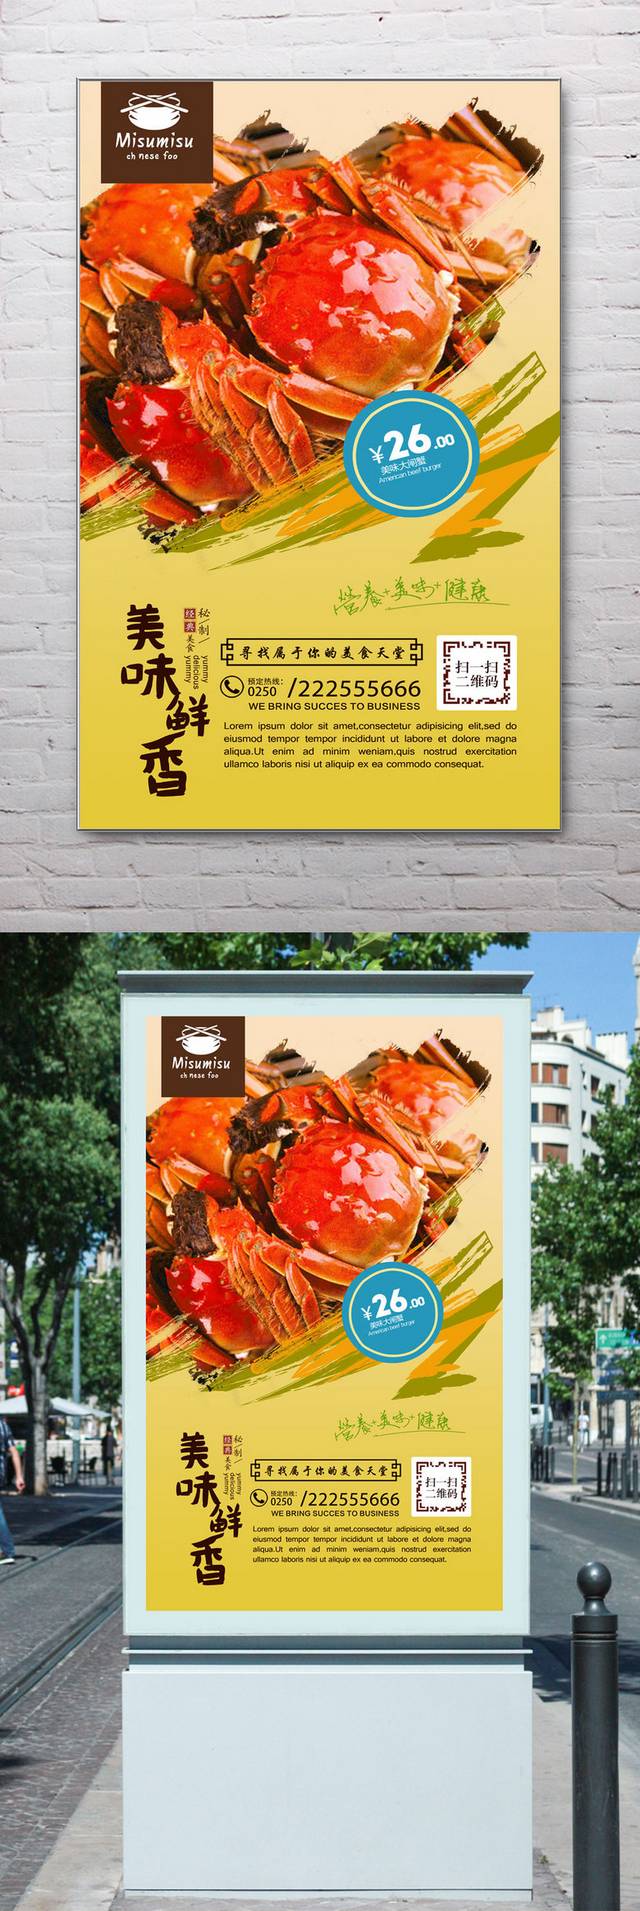 大闸蟹餐饮宣传海报设计